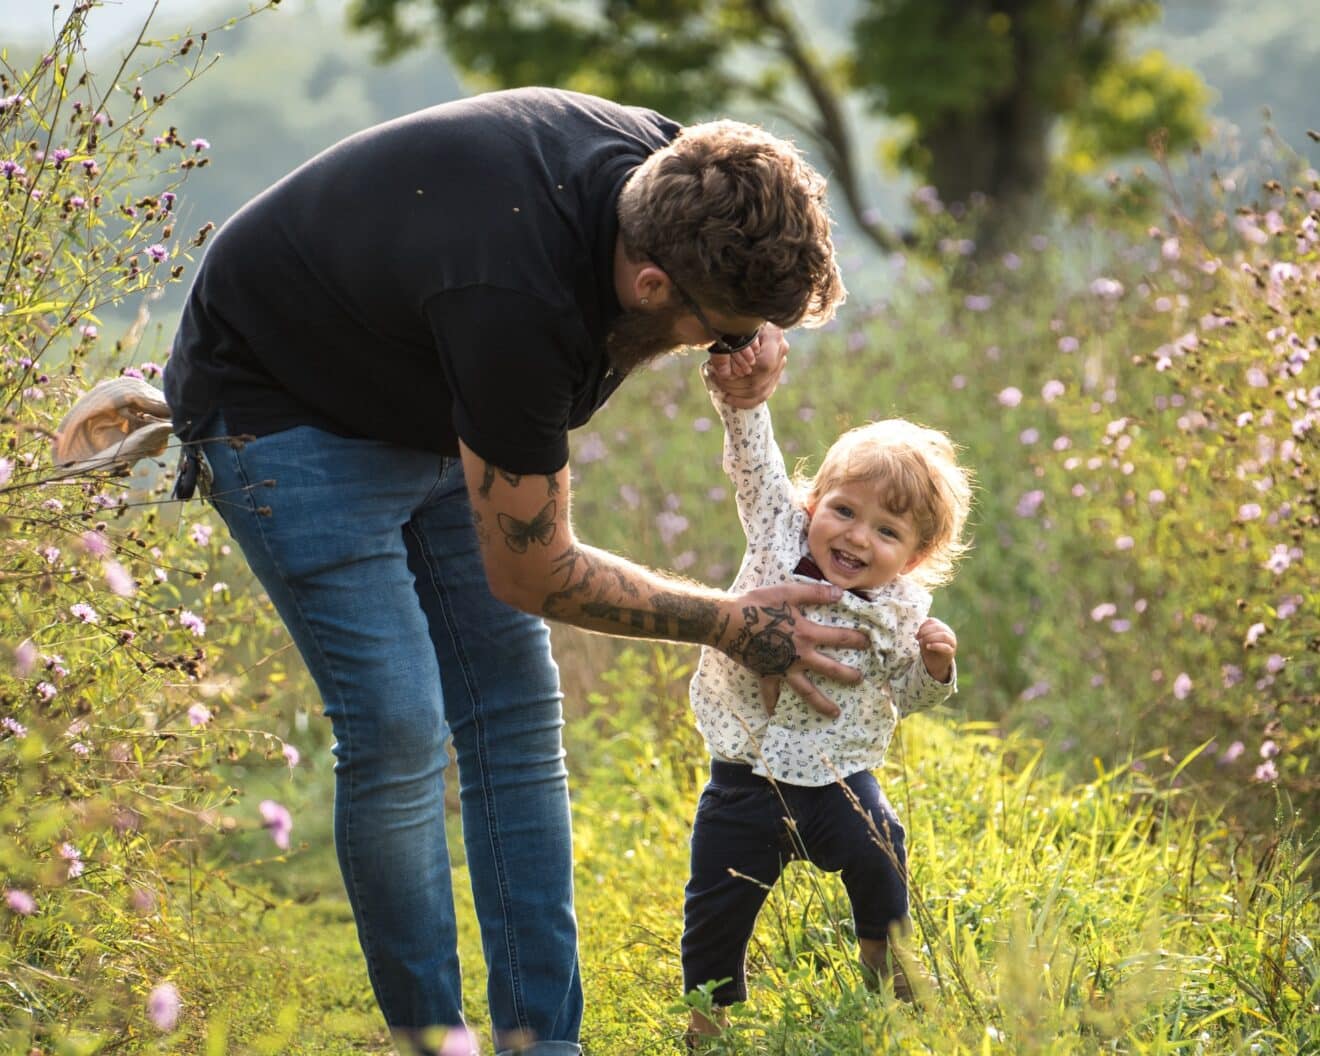 Comment devenir un bon père : conseils pratiques